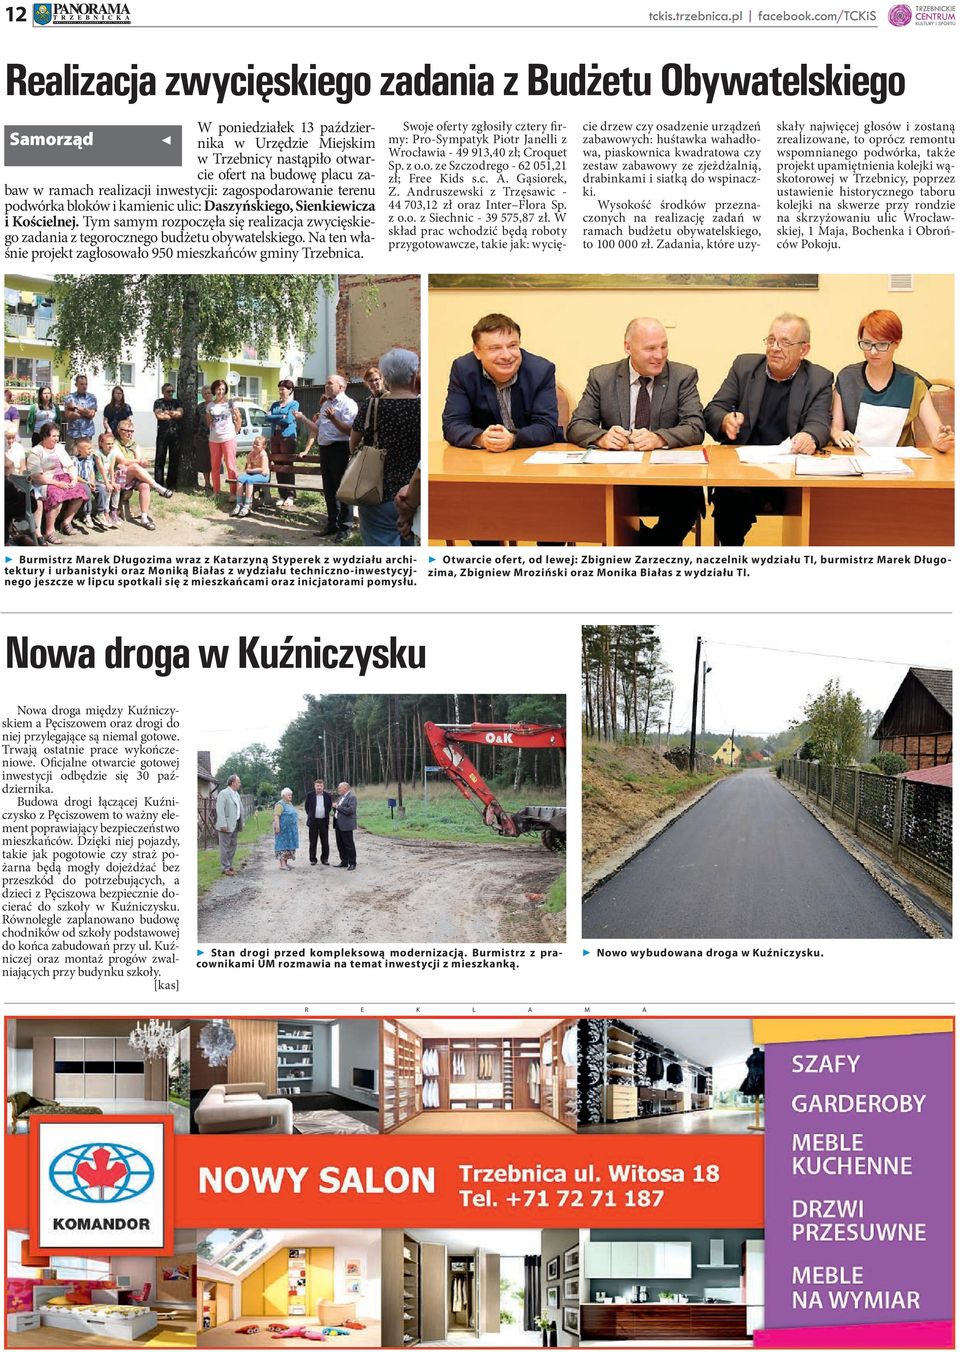 Tym samym rozpoczęła się realizacja zwycięskiego zadania z tegorocznego budżetu obywatelskiego. Na ten właśnie projekt zagłosowało 950 mieszkańców gminy Trzebnica.